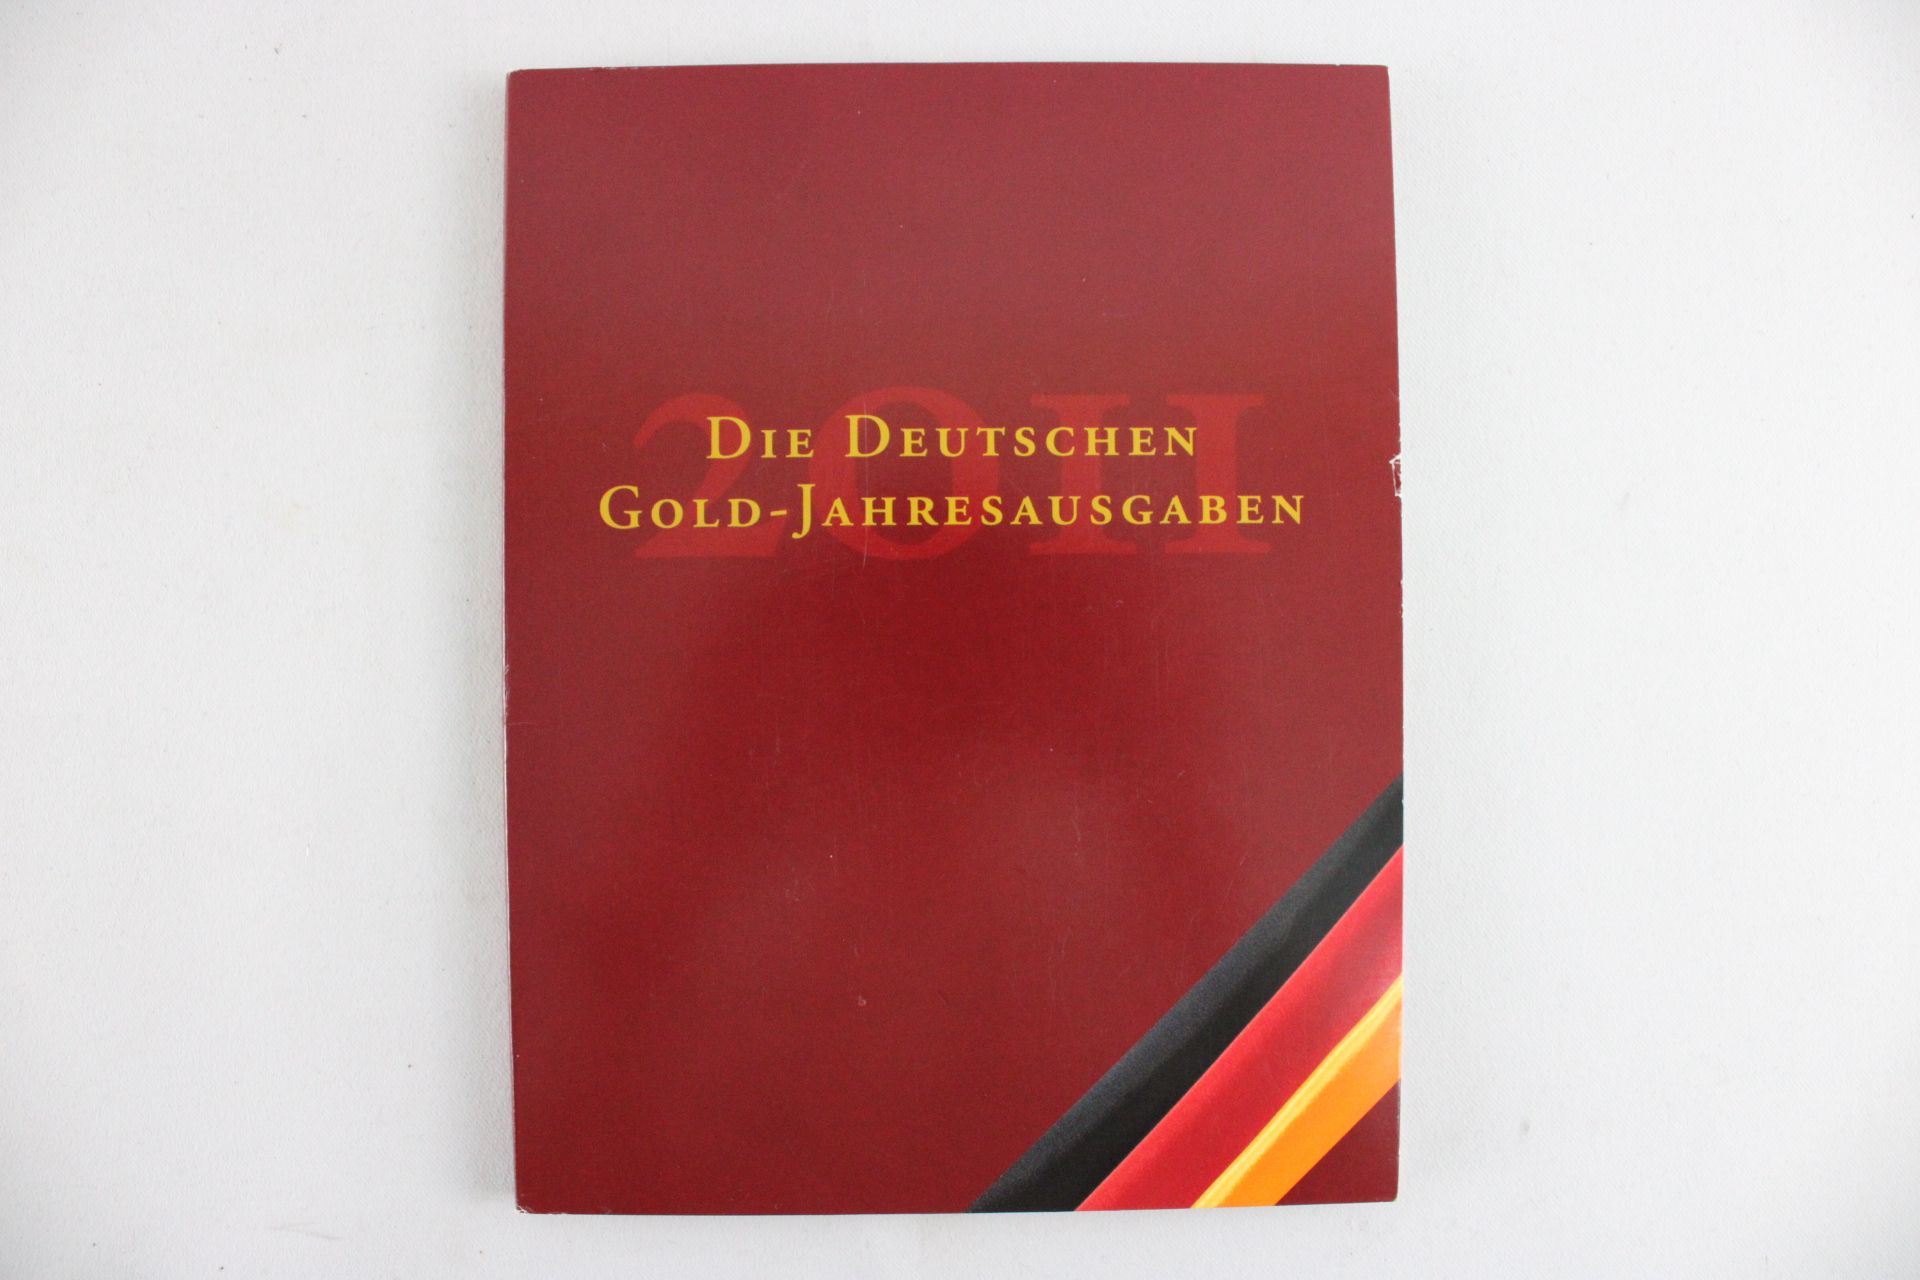 Die Deutschen Gold-Jahresausgaben 2011, 4 Goldmünzen, Berlin - Image 2 of 4